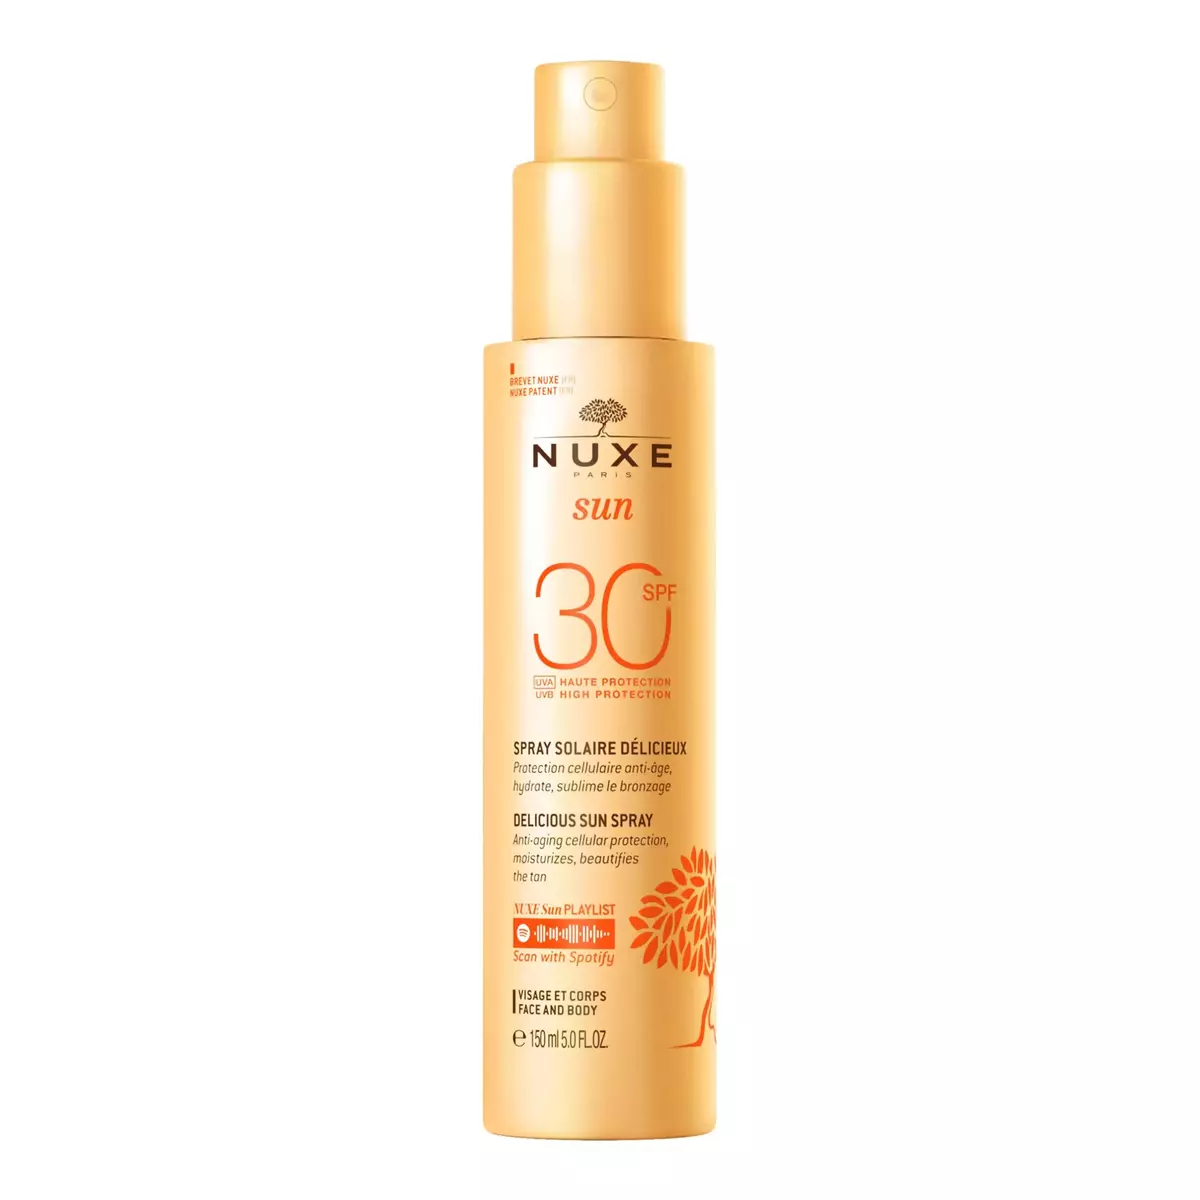 NUXE Sun Spray solaire délicieux visage et corps SPF30 150ml